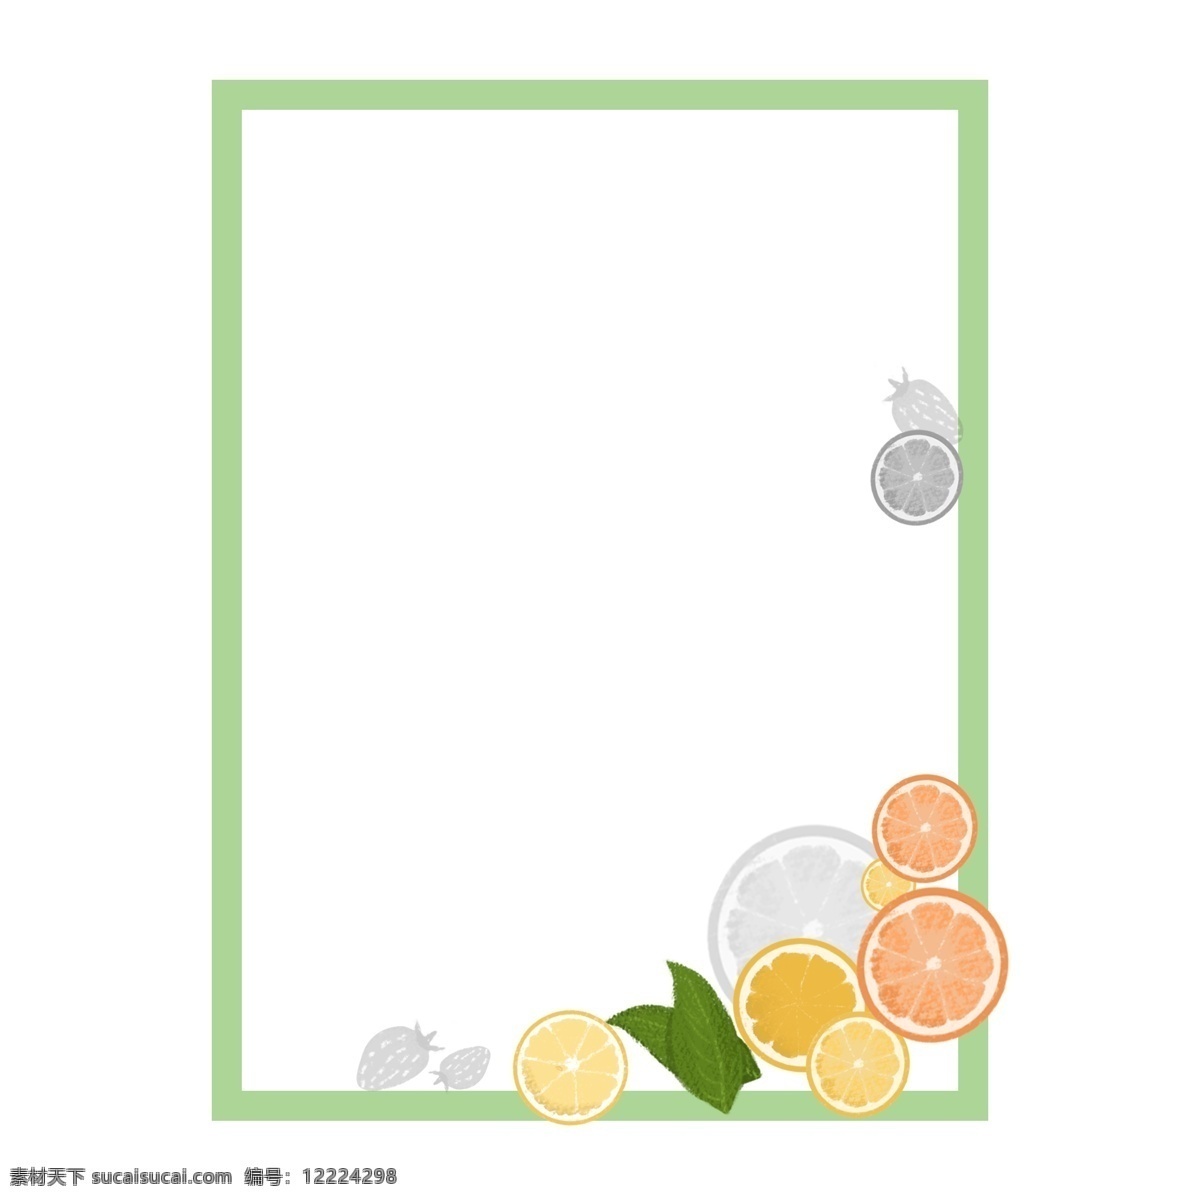 各种 水果 美食 柠檬 草莓 小 清新 边框 元素 小清新 边框元素 美食边框元素 灰白